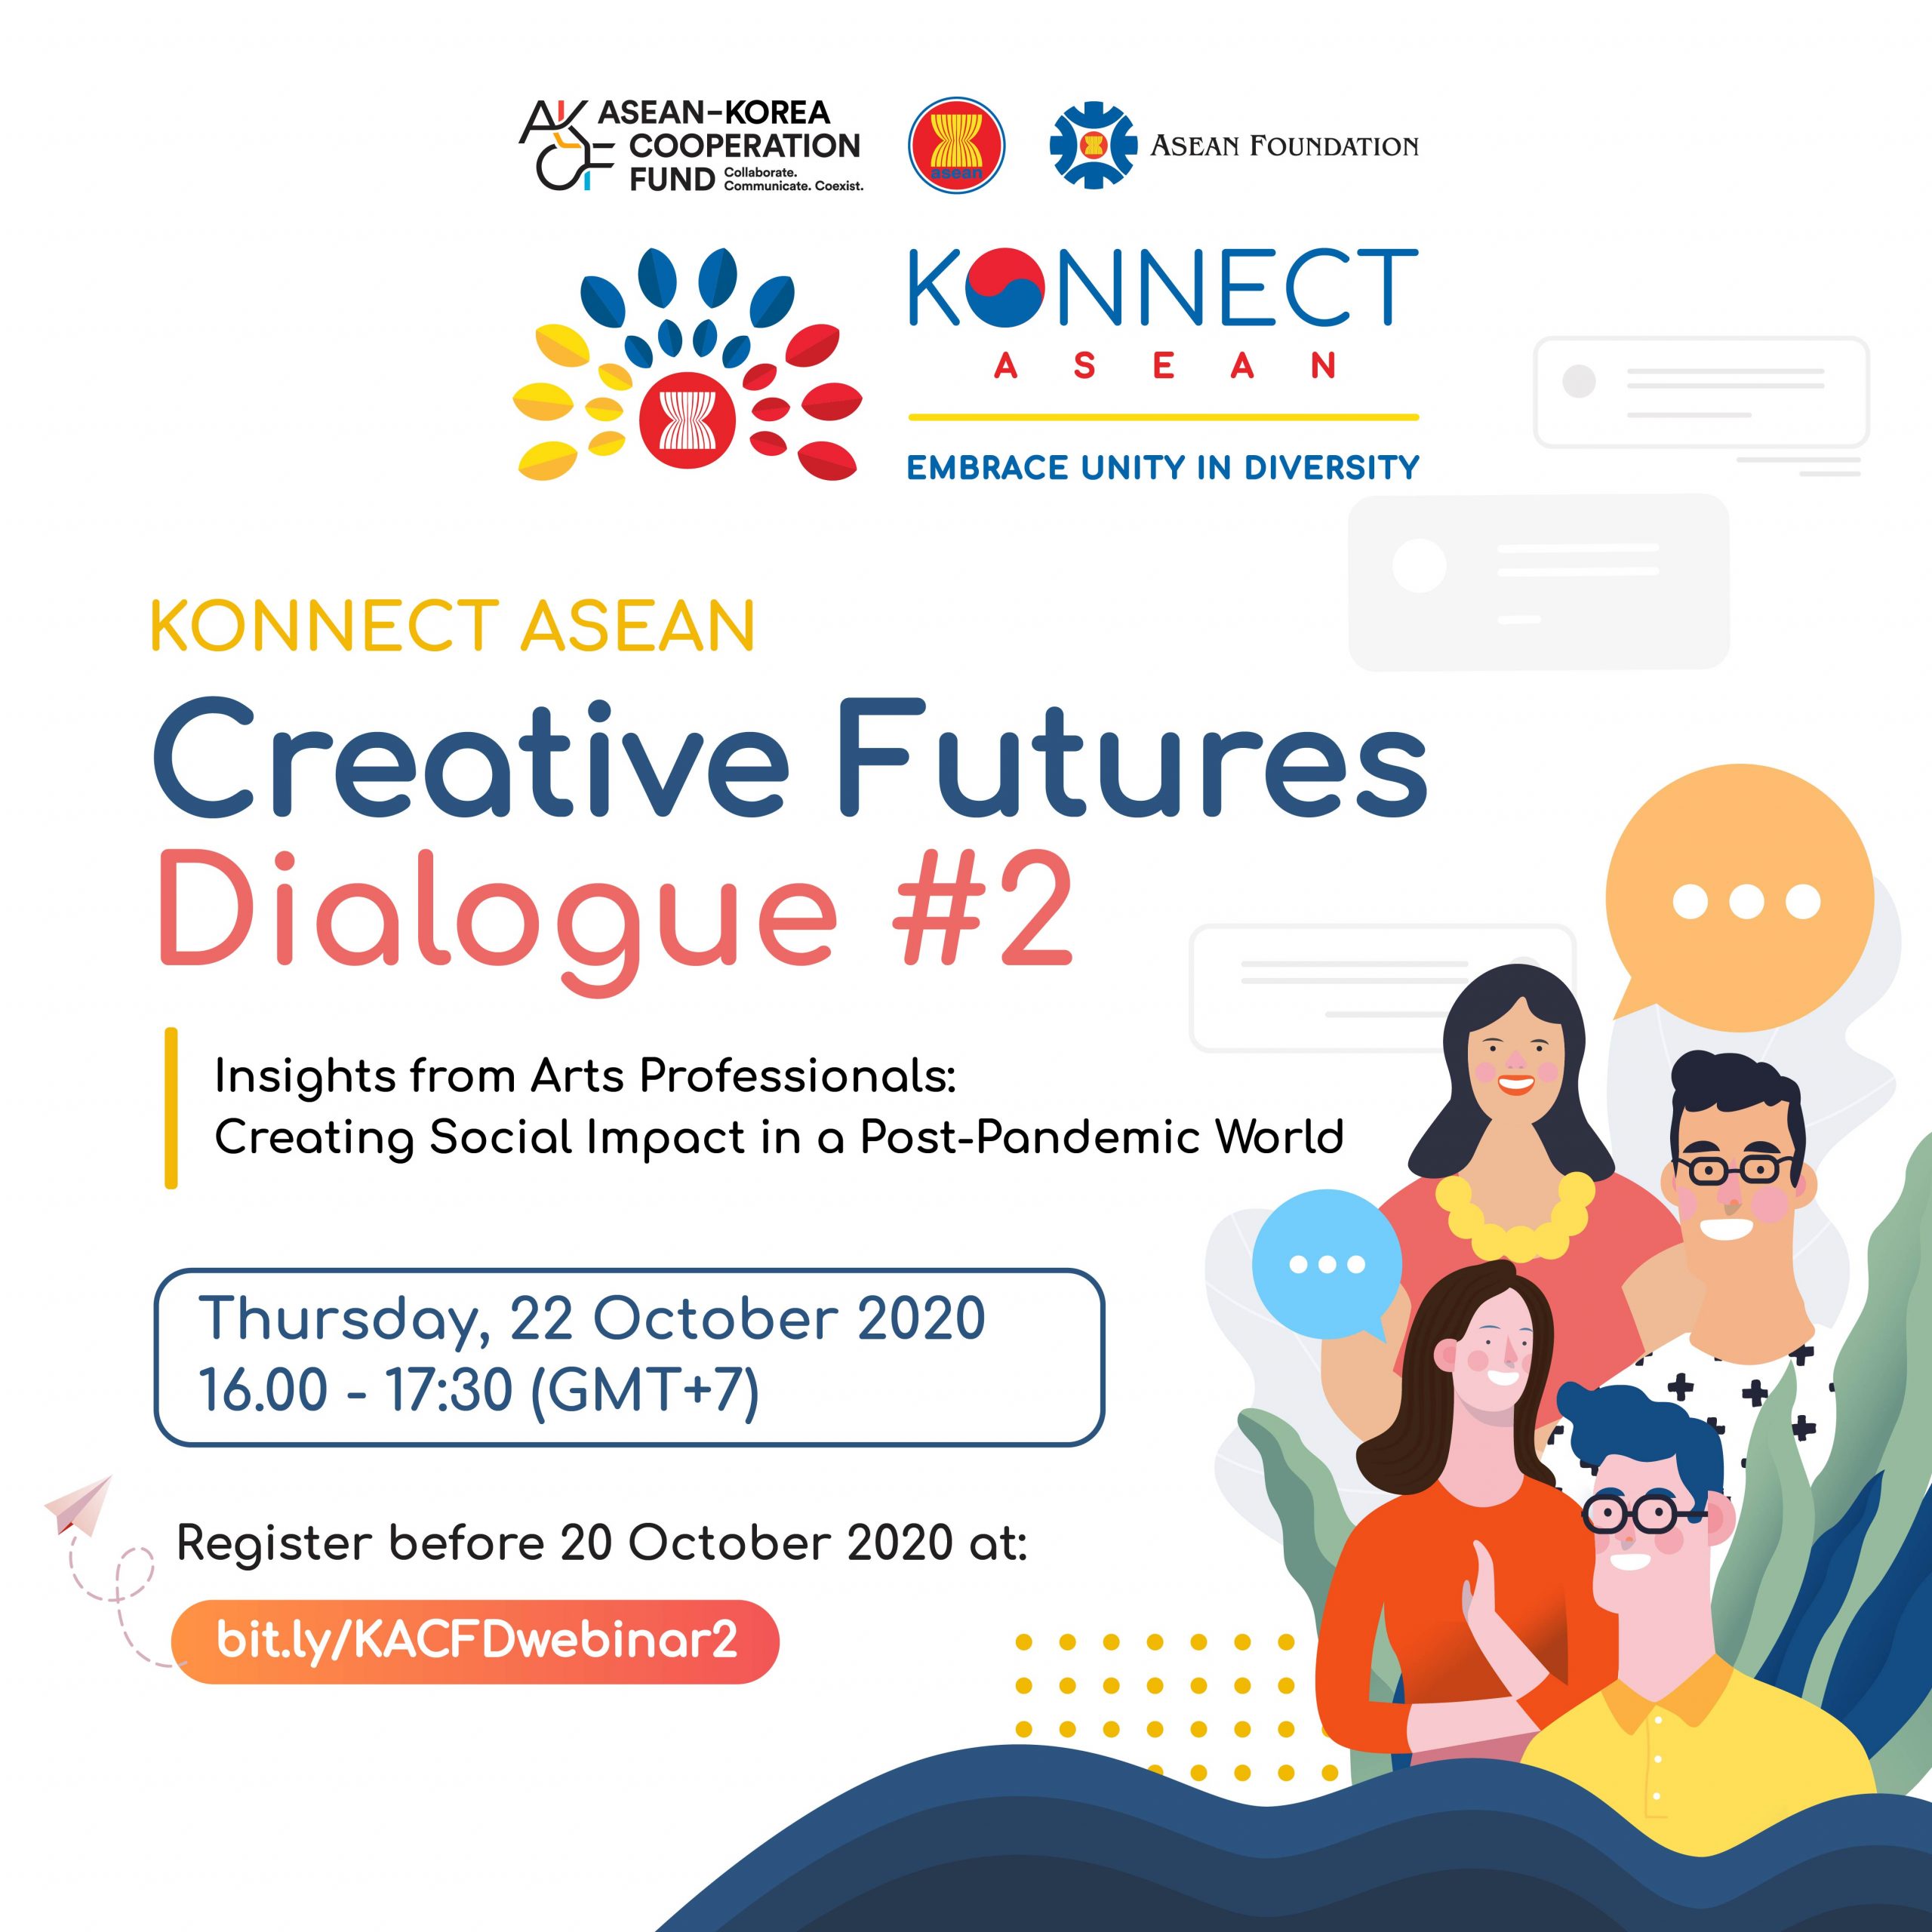 KONNECT ASEAN Creative Futures Dialogue #2